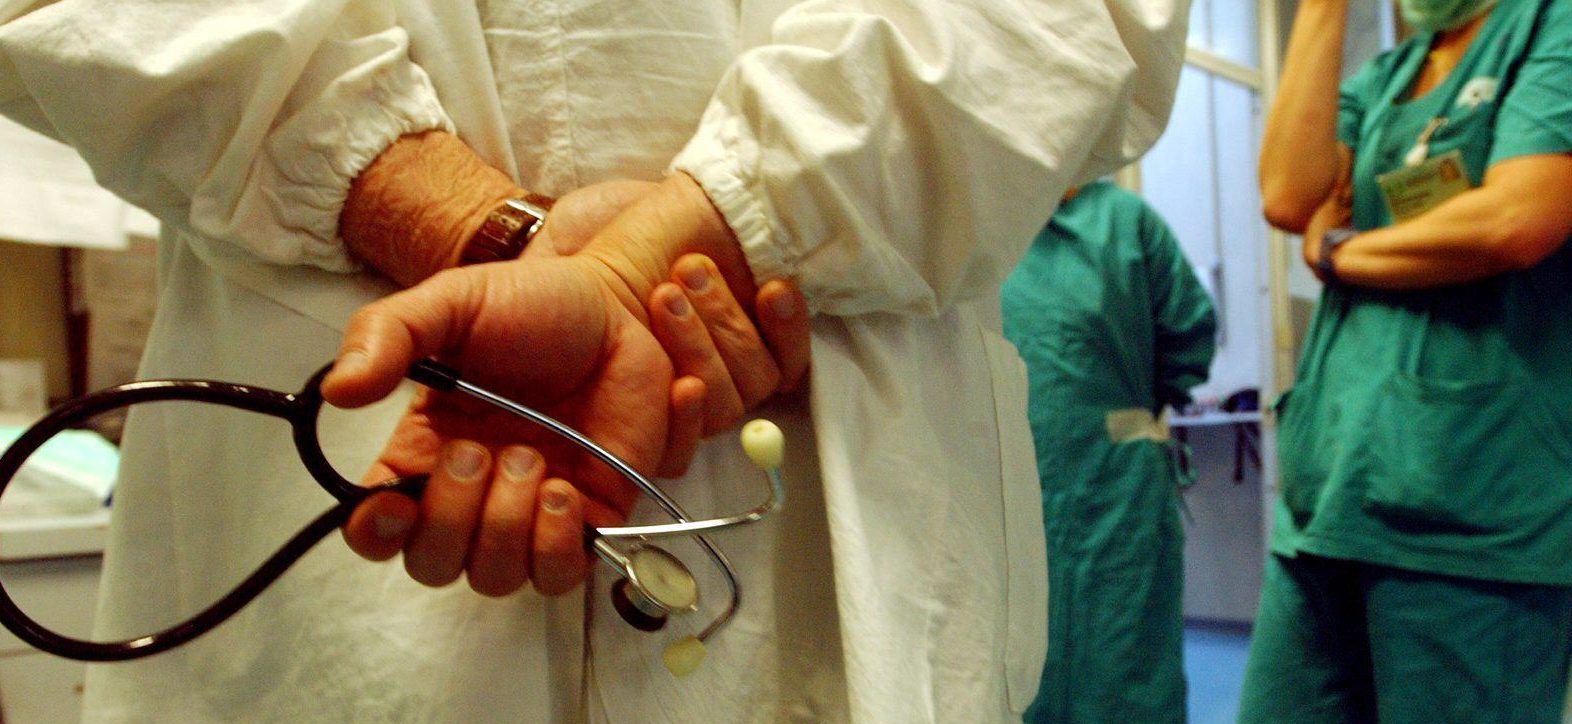 Ariano Irpino| Al distretto sanitario manca l’otoscopio, l’Asl “scarica” il medico sprovvisto